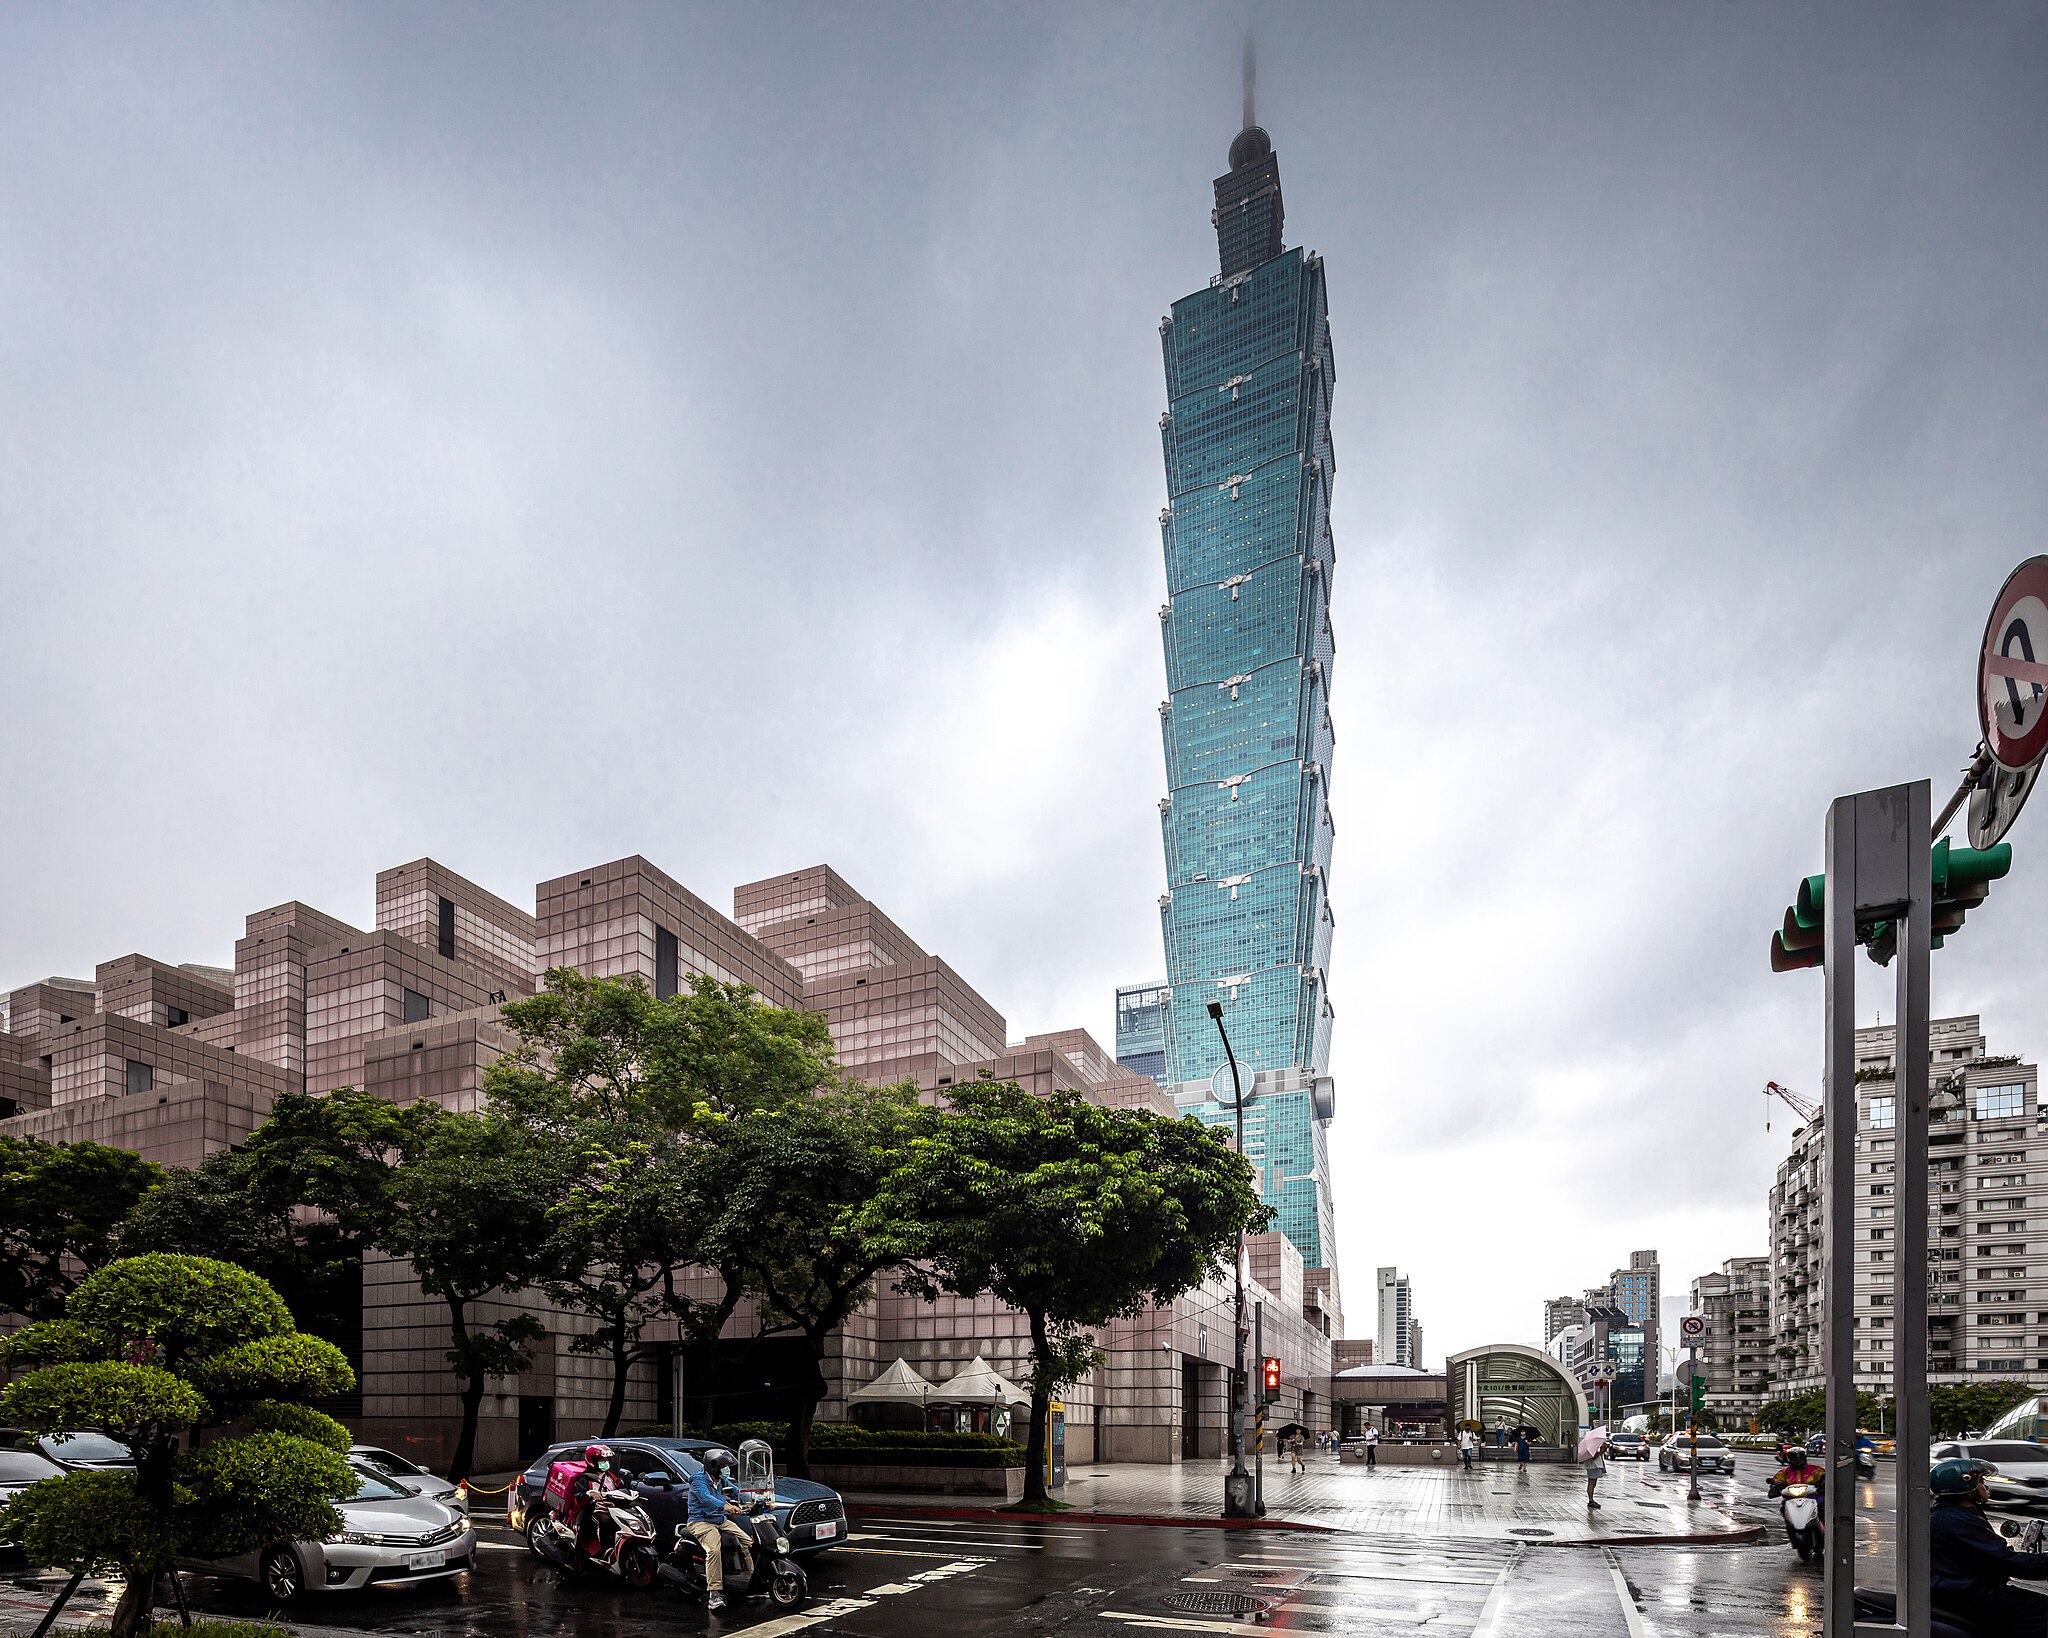 Bild: Supanut Arunoprayote, TWTC and Taipei 101 08.23, via Wikimedia Commons, (keine Änderungen vorgenommen)